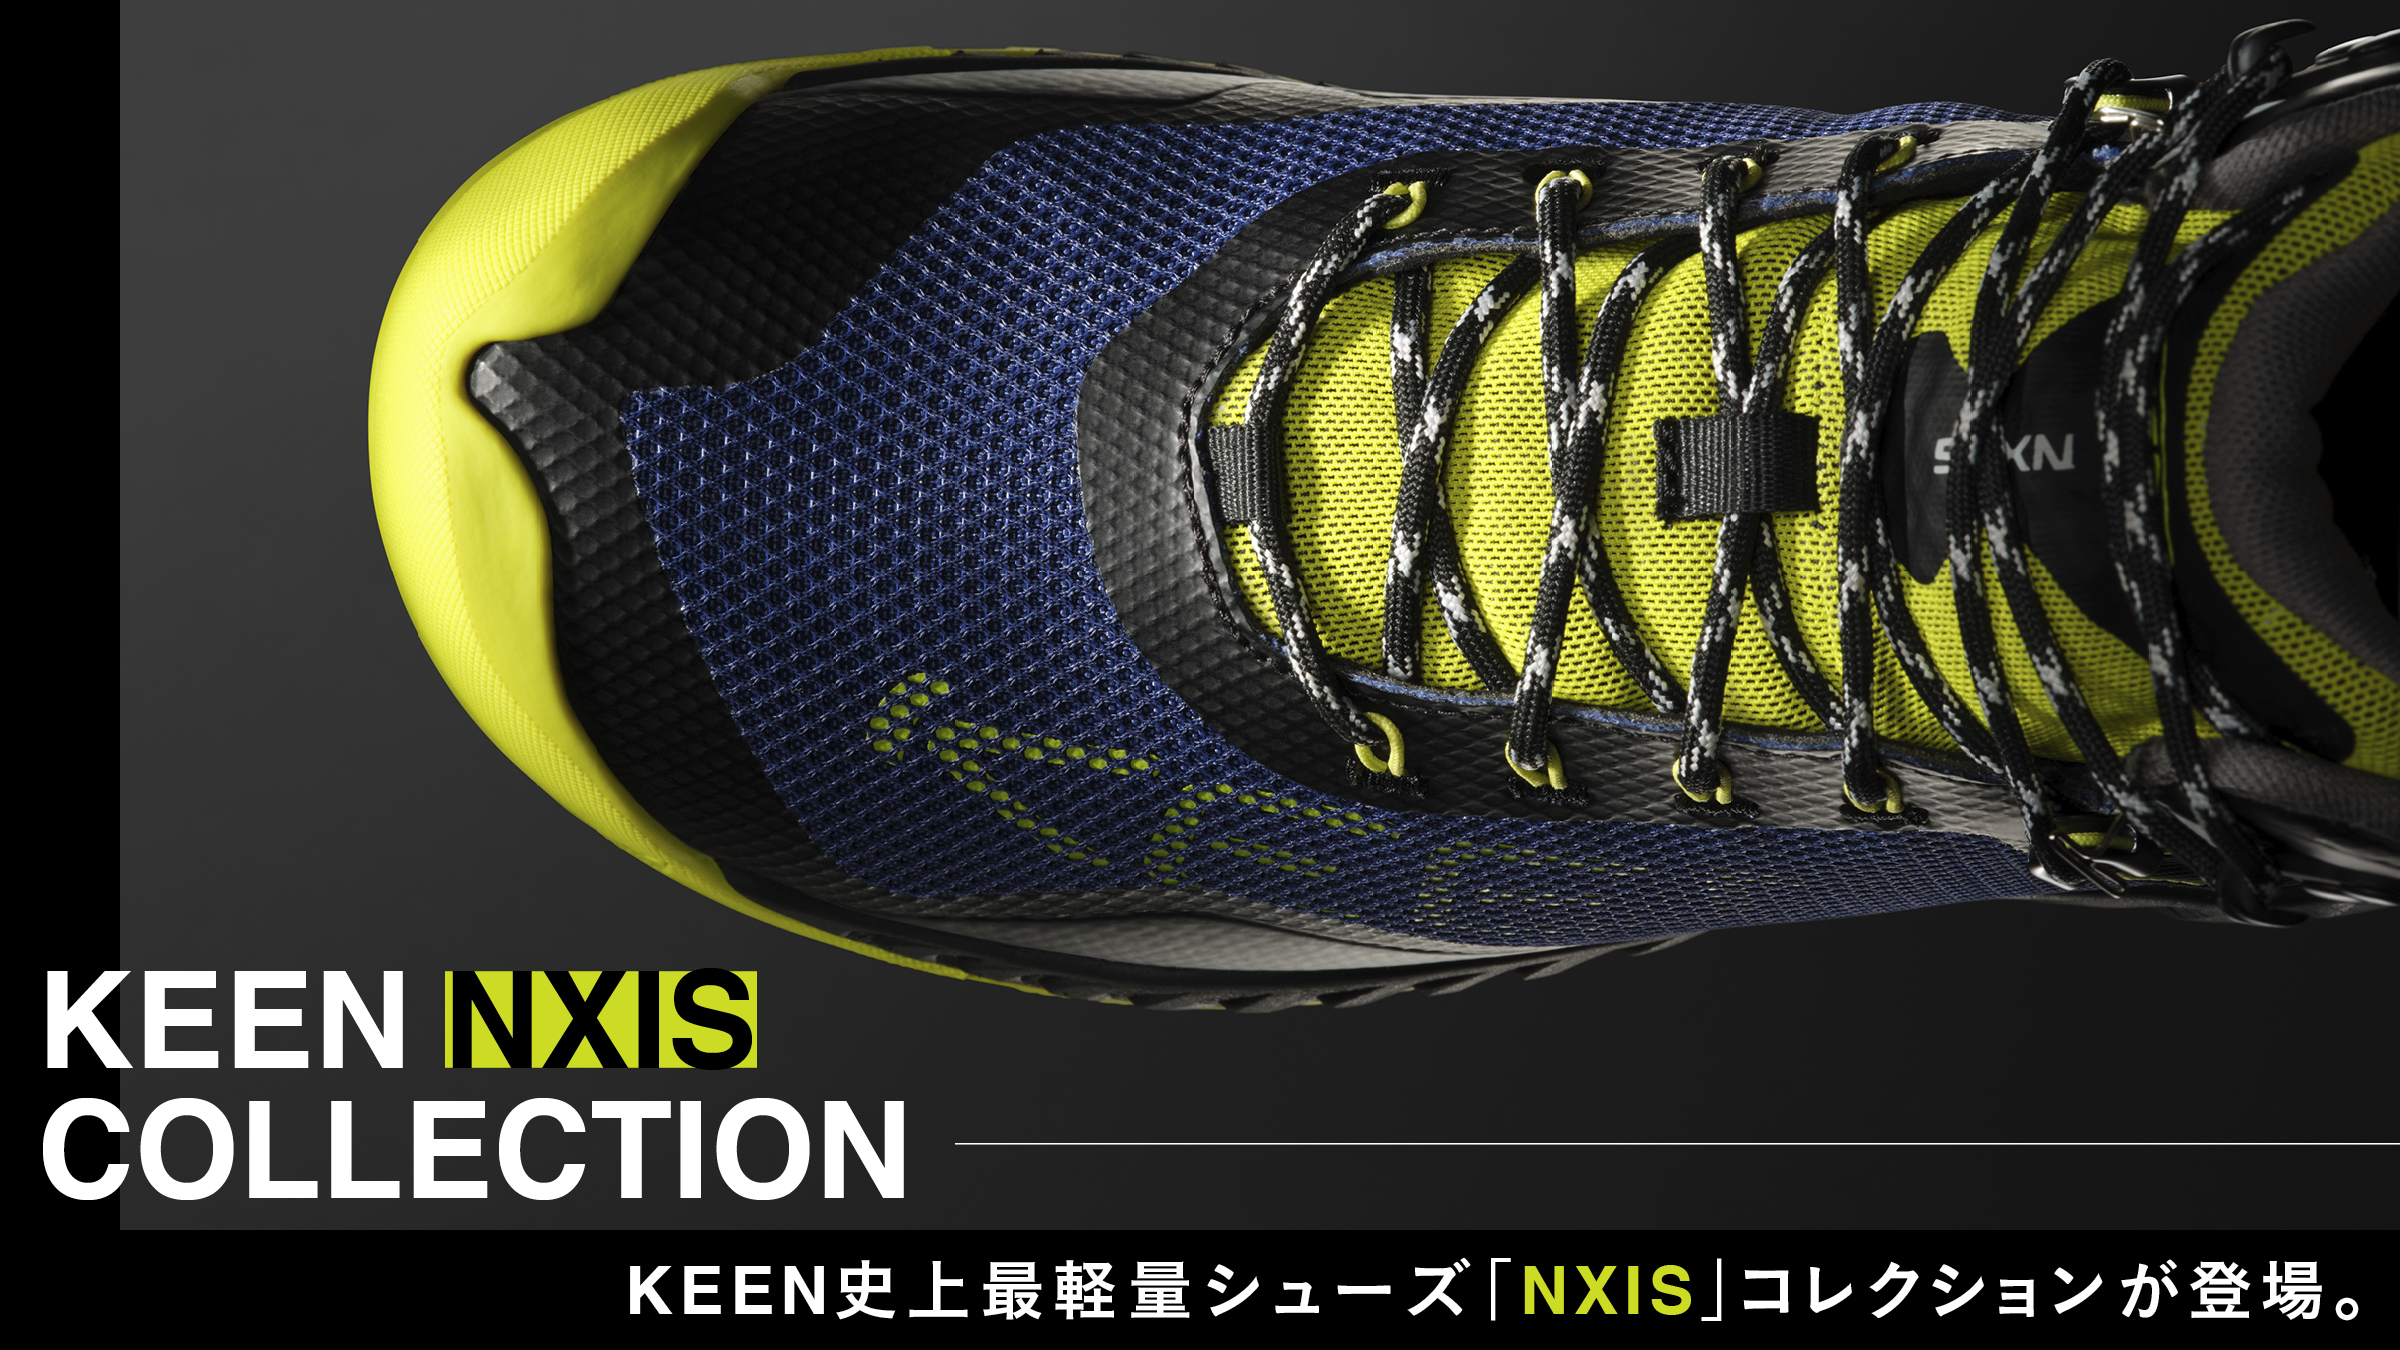 KEEN史上最軽量シューズ「NXIS」コレクションが登場。